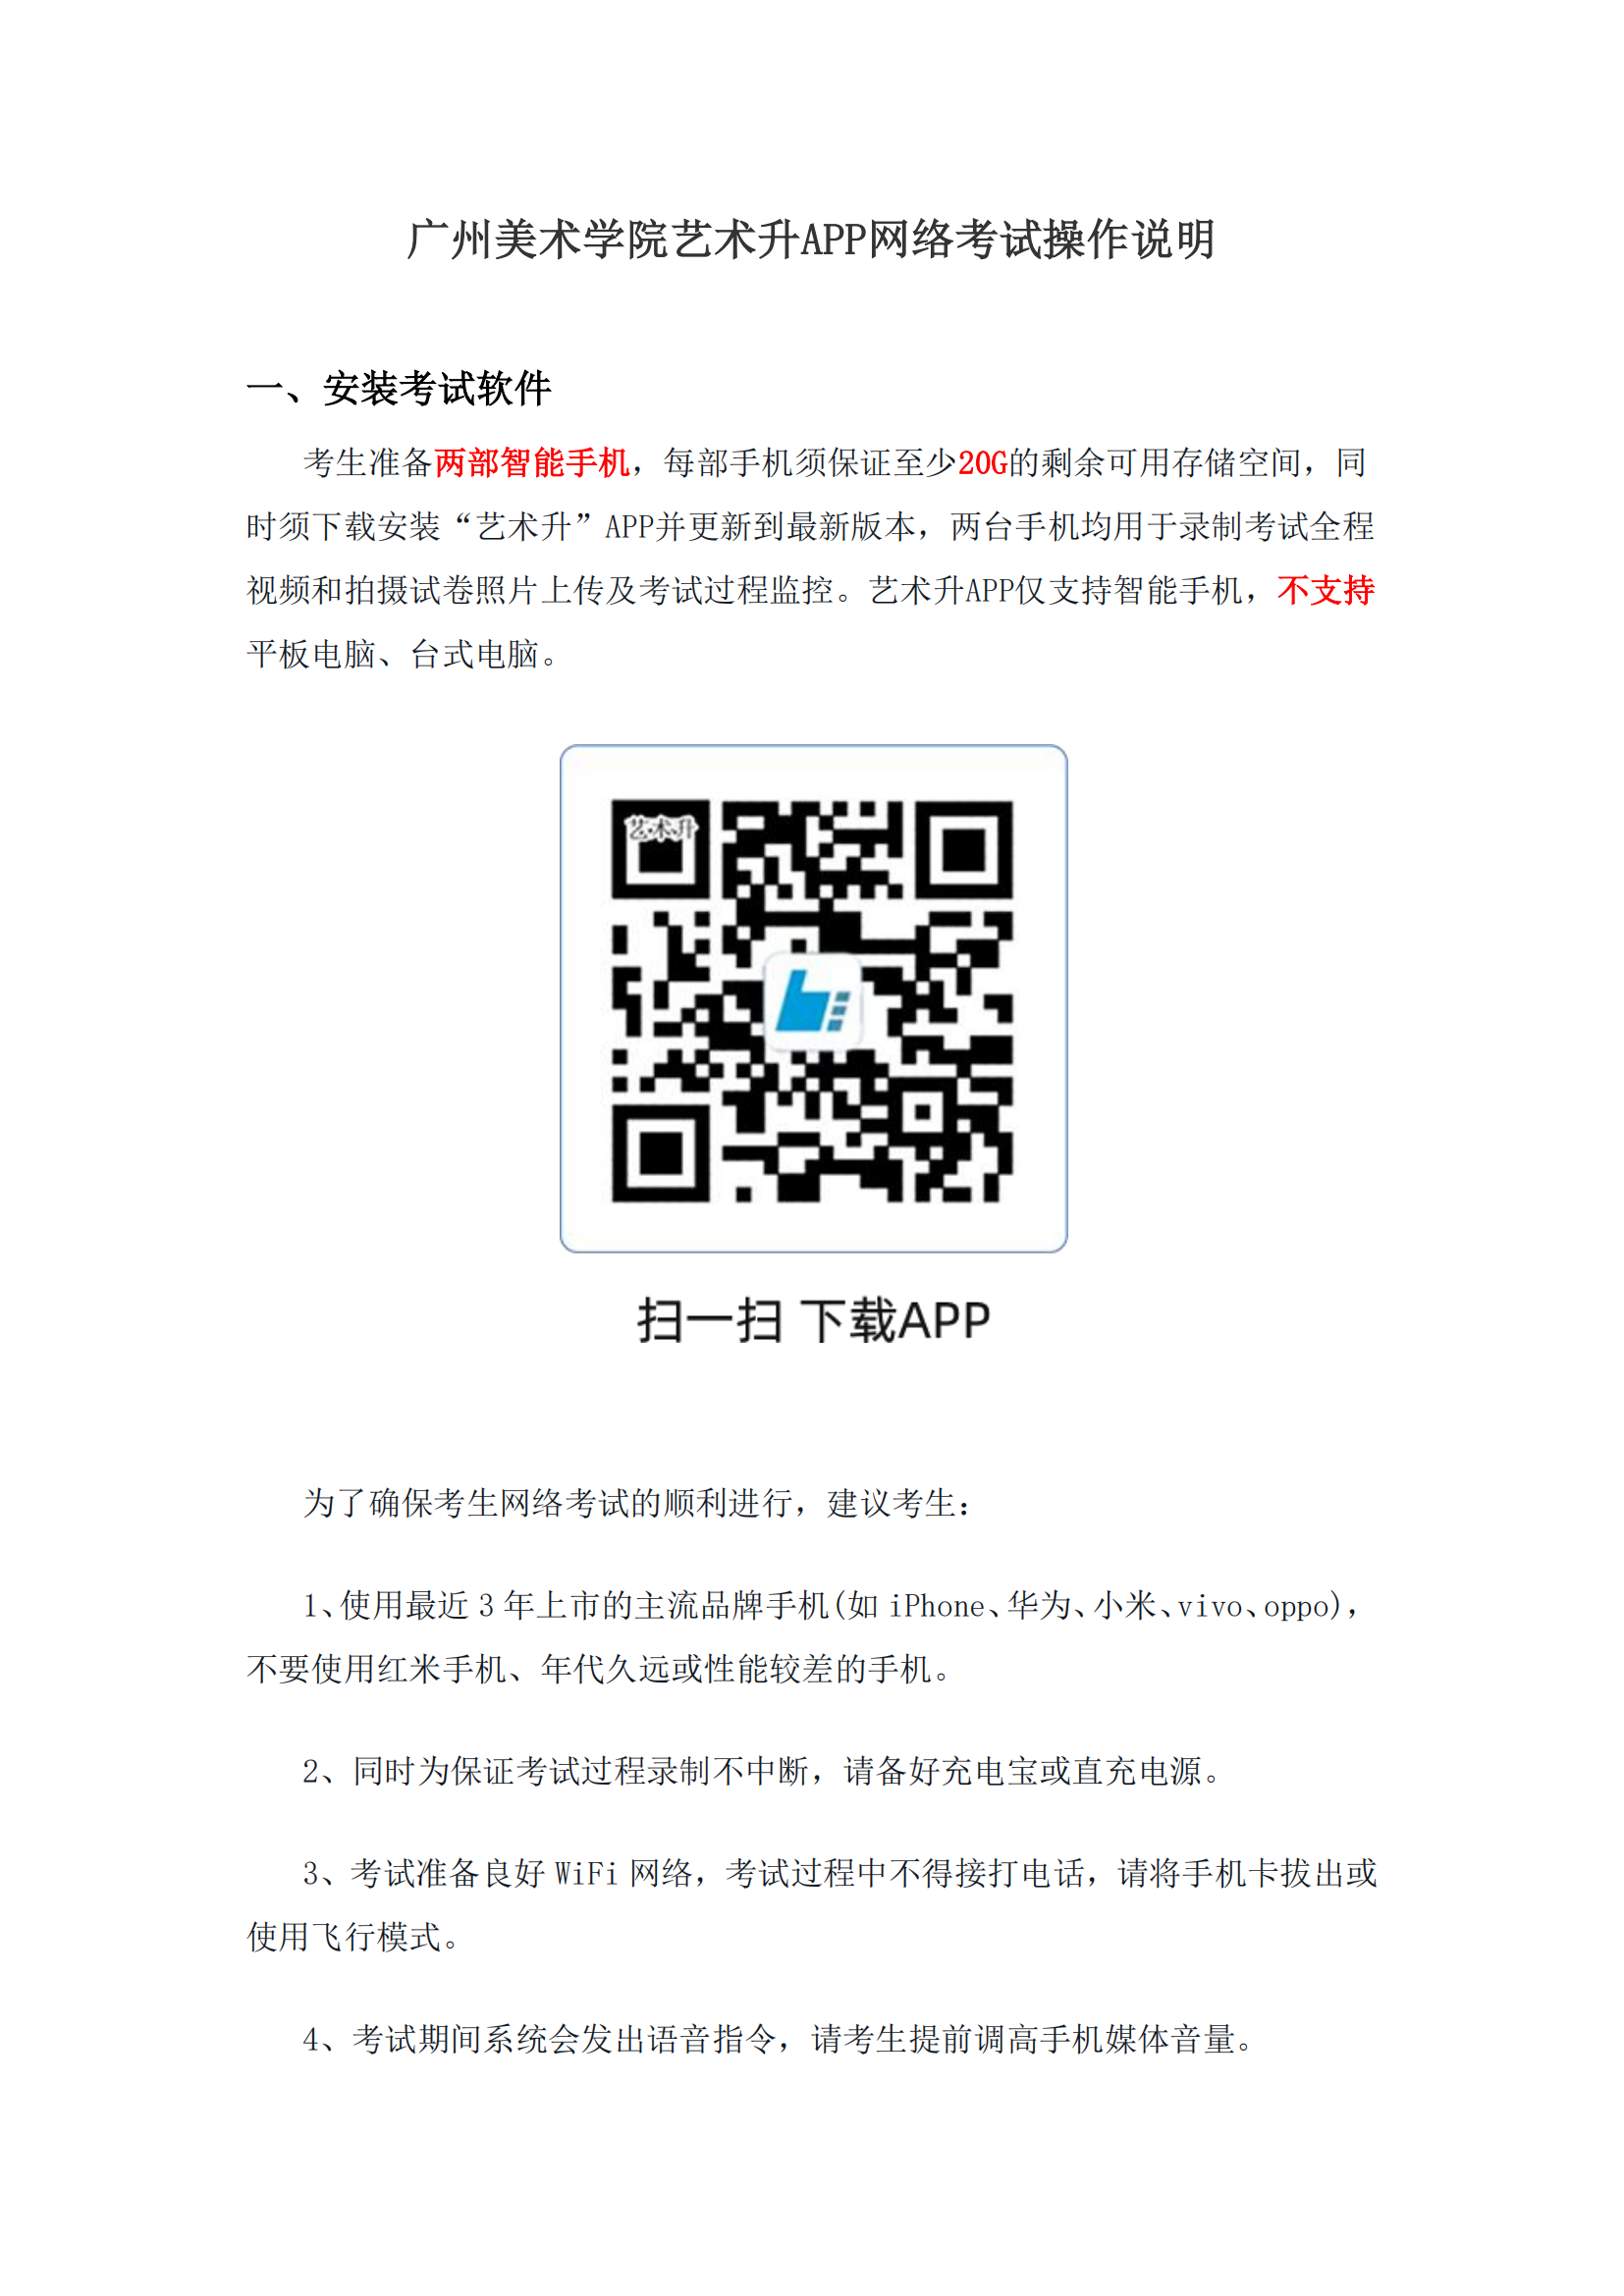 附件1：广州美术学院艺术升APP网络考试操作说明_00.png